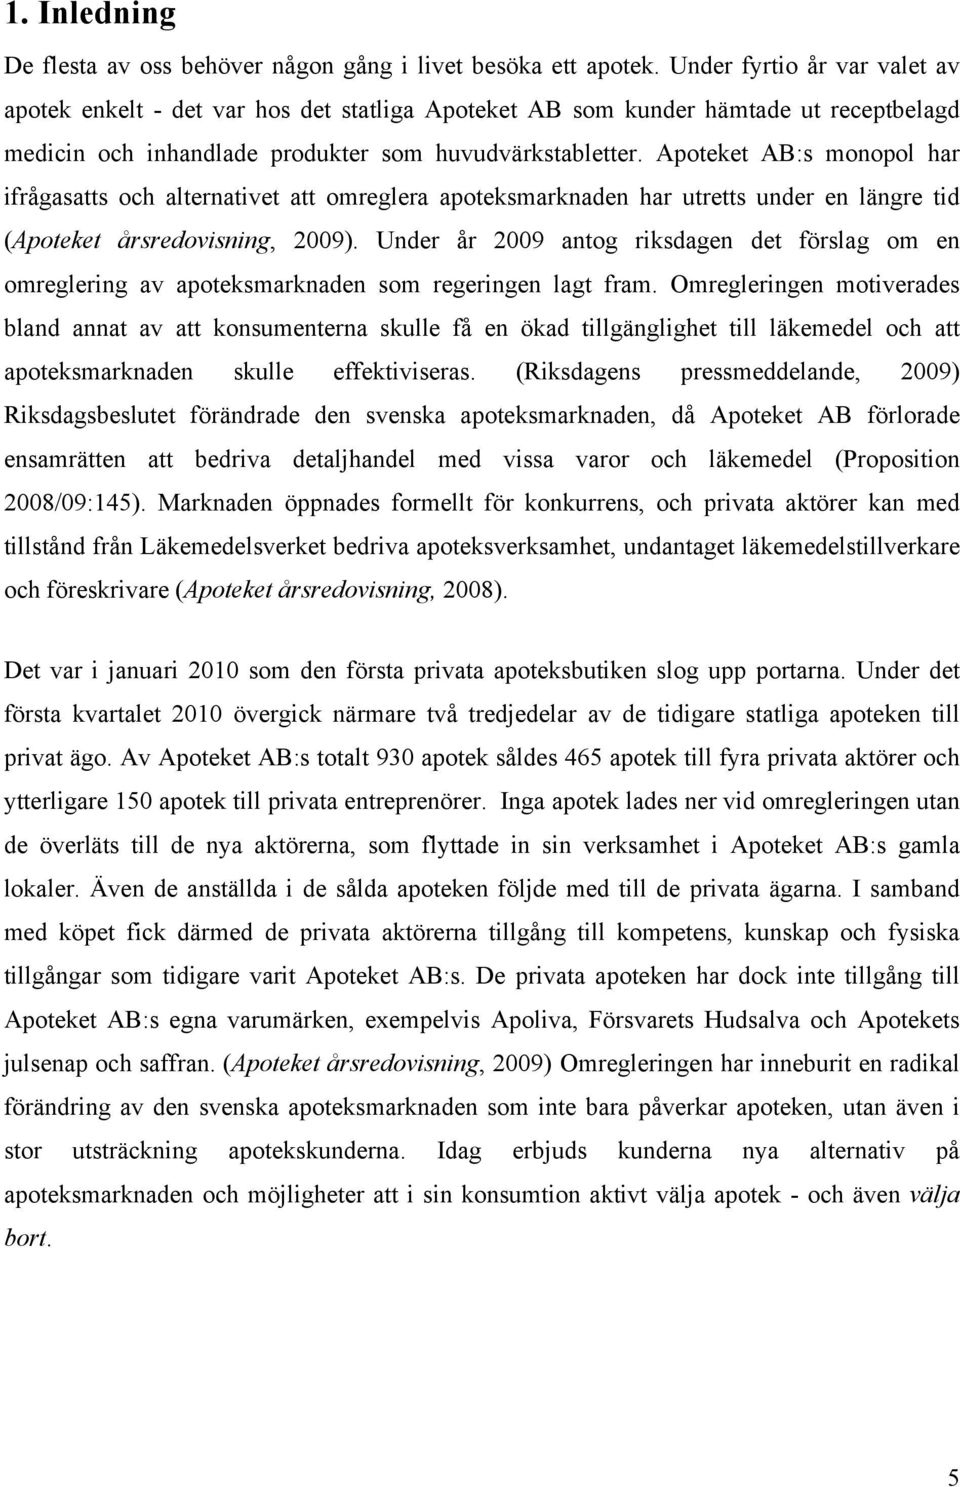 Apoteket AB:s monopol har ifrågasatts och alternativet att omreglera apoteksmarknaden har utretts under en längre tid (Apoteket årsredovisning, 2009).